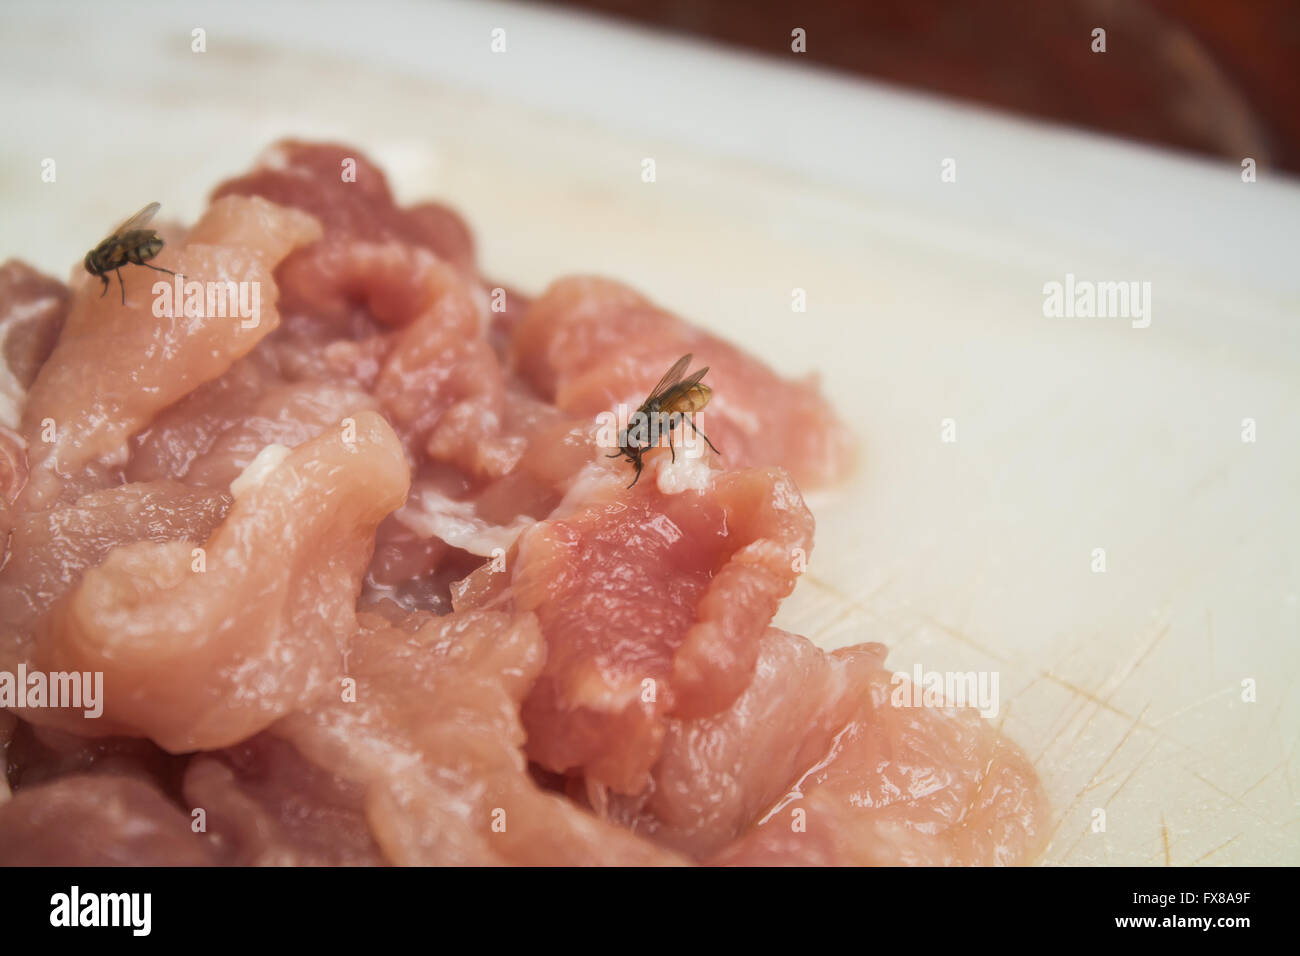 Porc contaminés sur le bloc de hachage en plastique avec mouche Banque D'Images